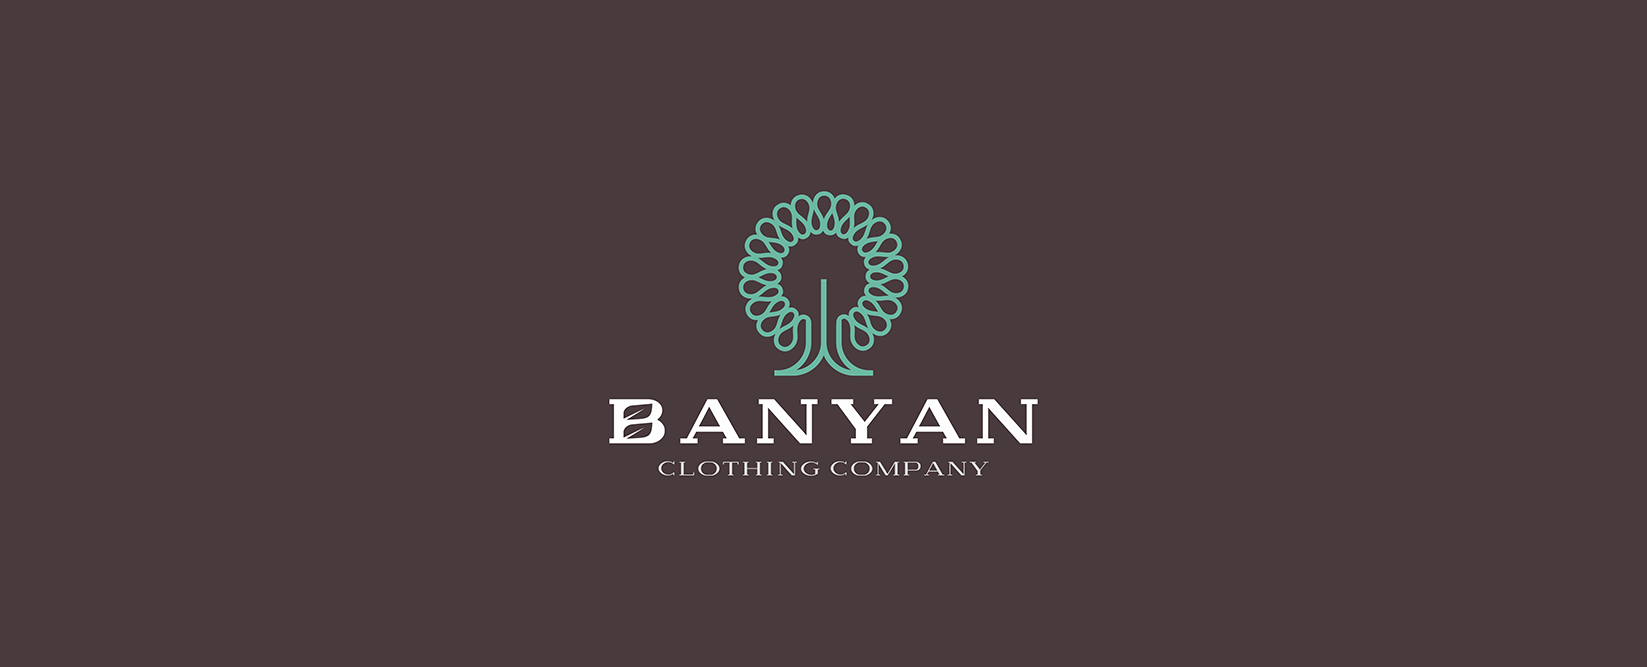 Banyan-logo